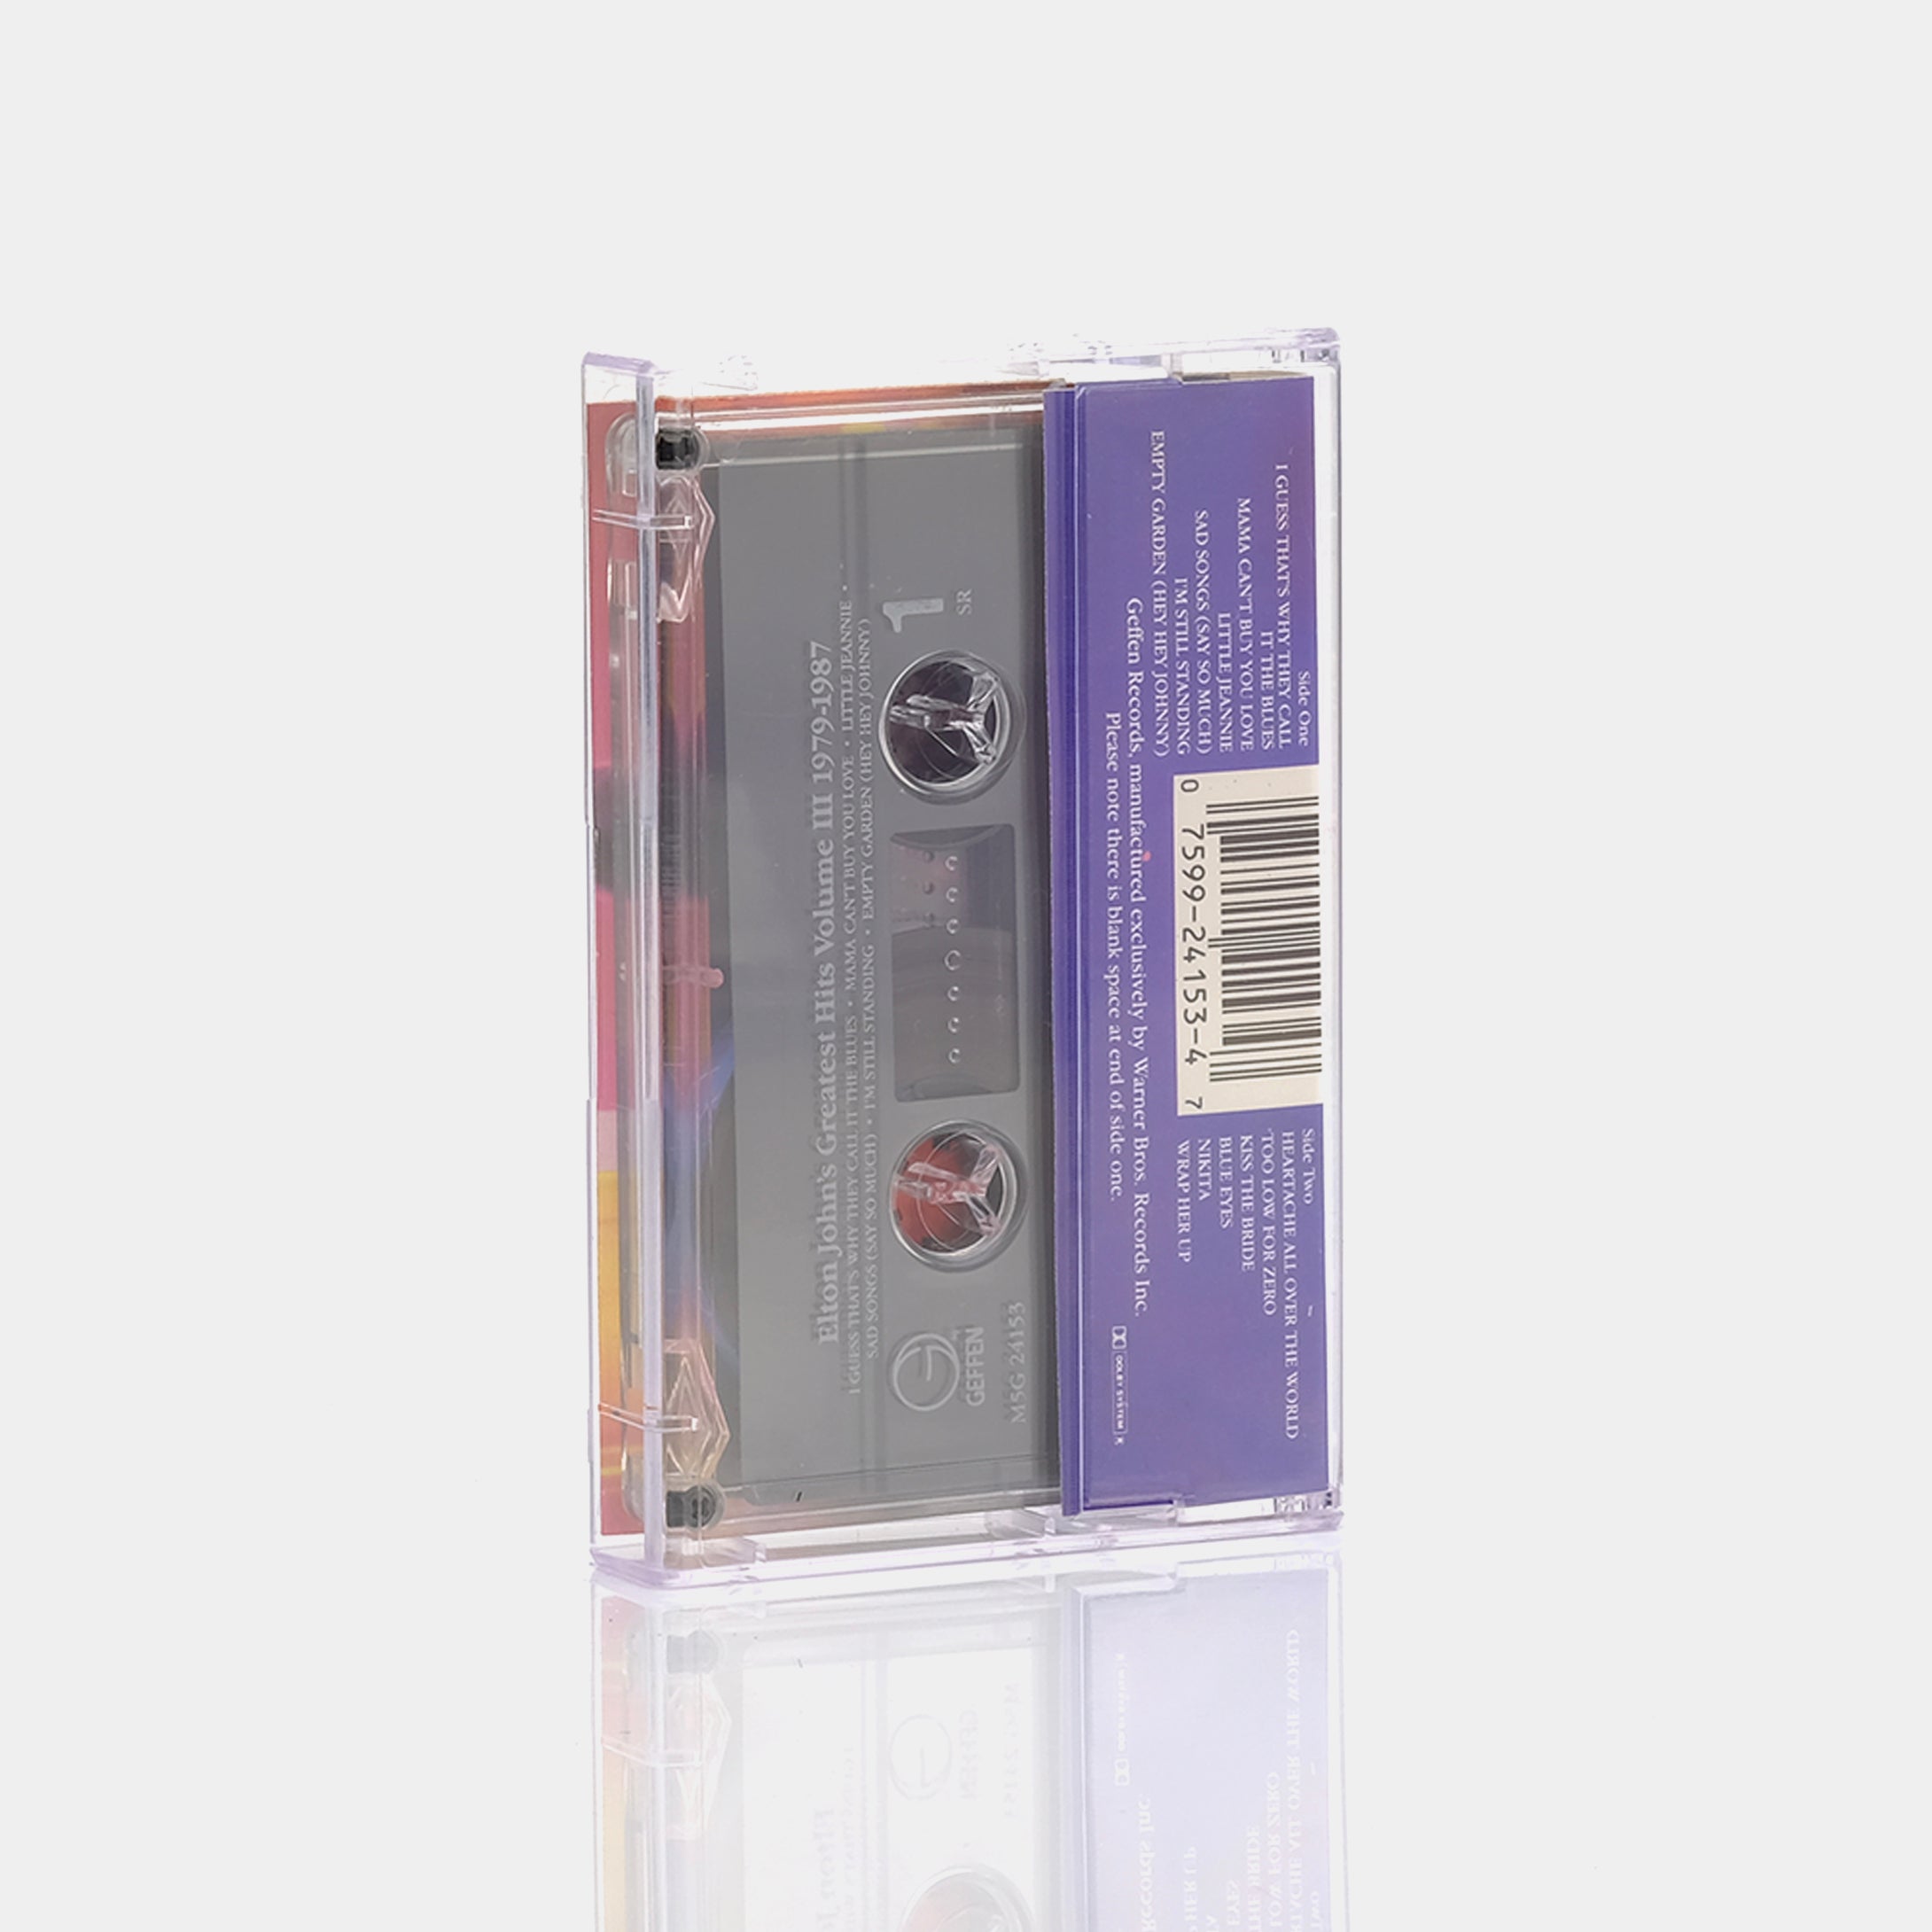 Elton John - Greatest Hits 1979-1987 Cassette Tape